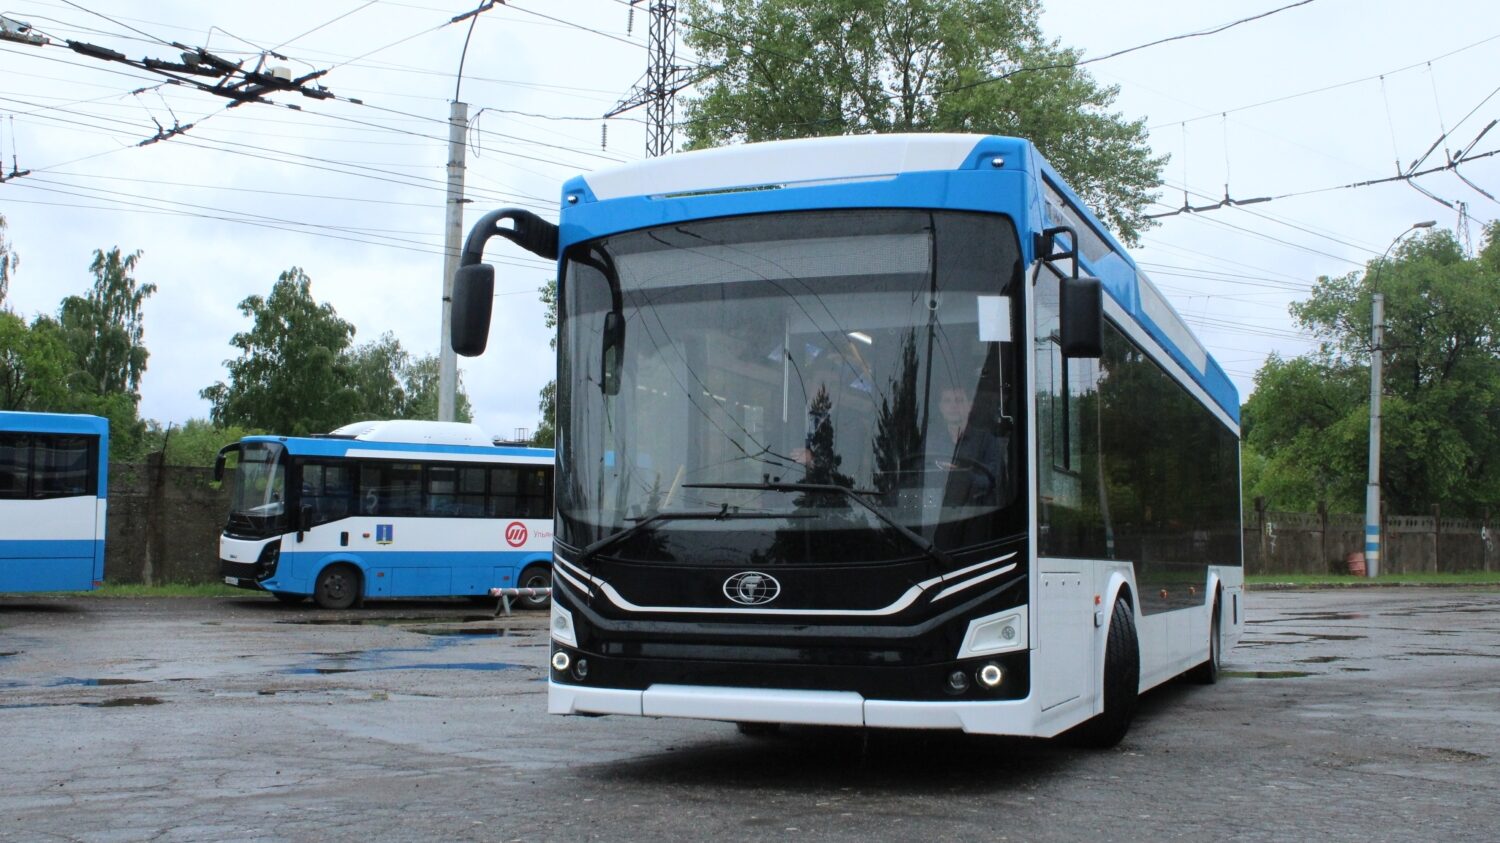 Admiral se, v nové verzi, objevil v Uljanovsku znovu na počátku roku 2022. Místní se však nových trolejbusů nedočkali ani loni. (foto: Administracija goroda Uľjanovska)